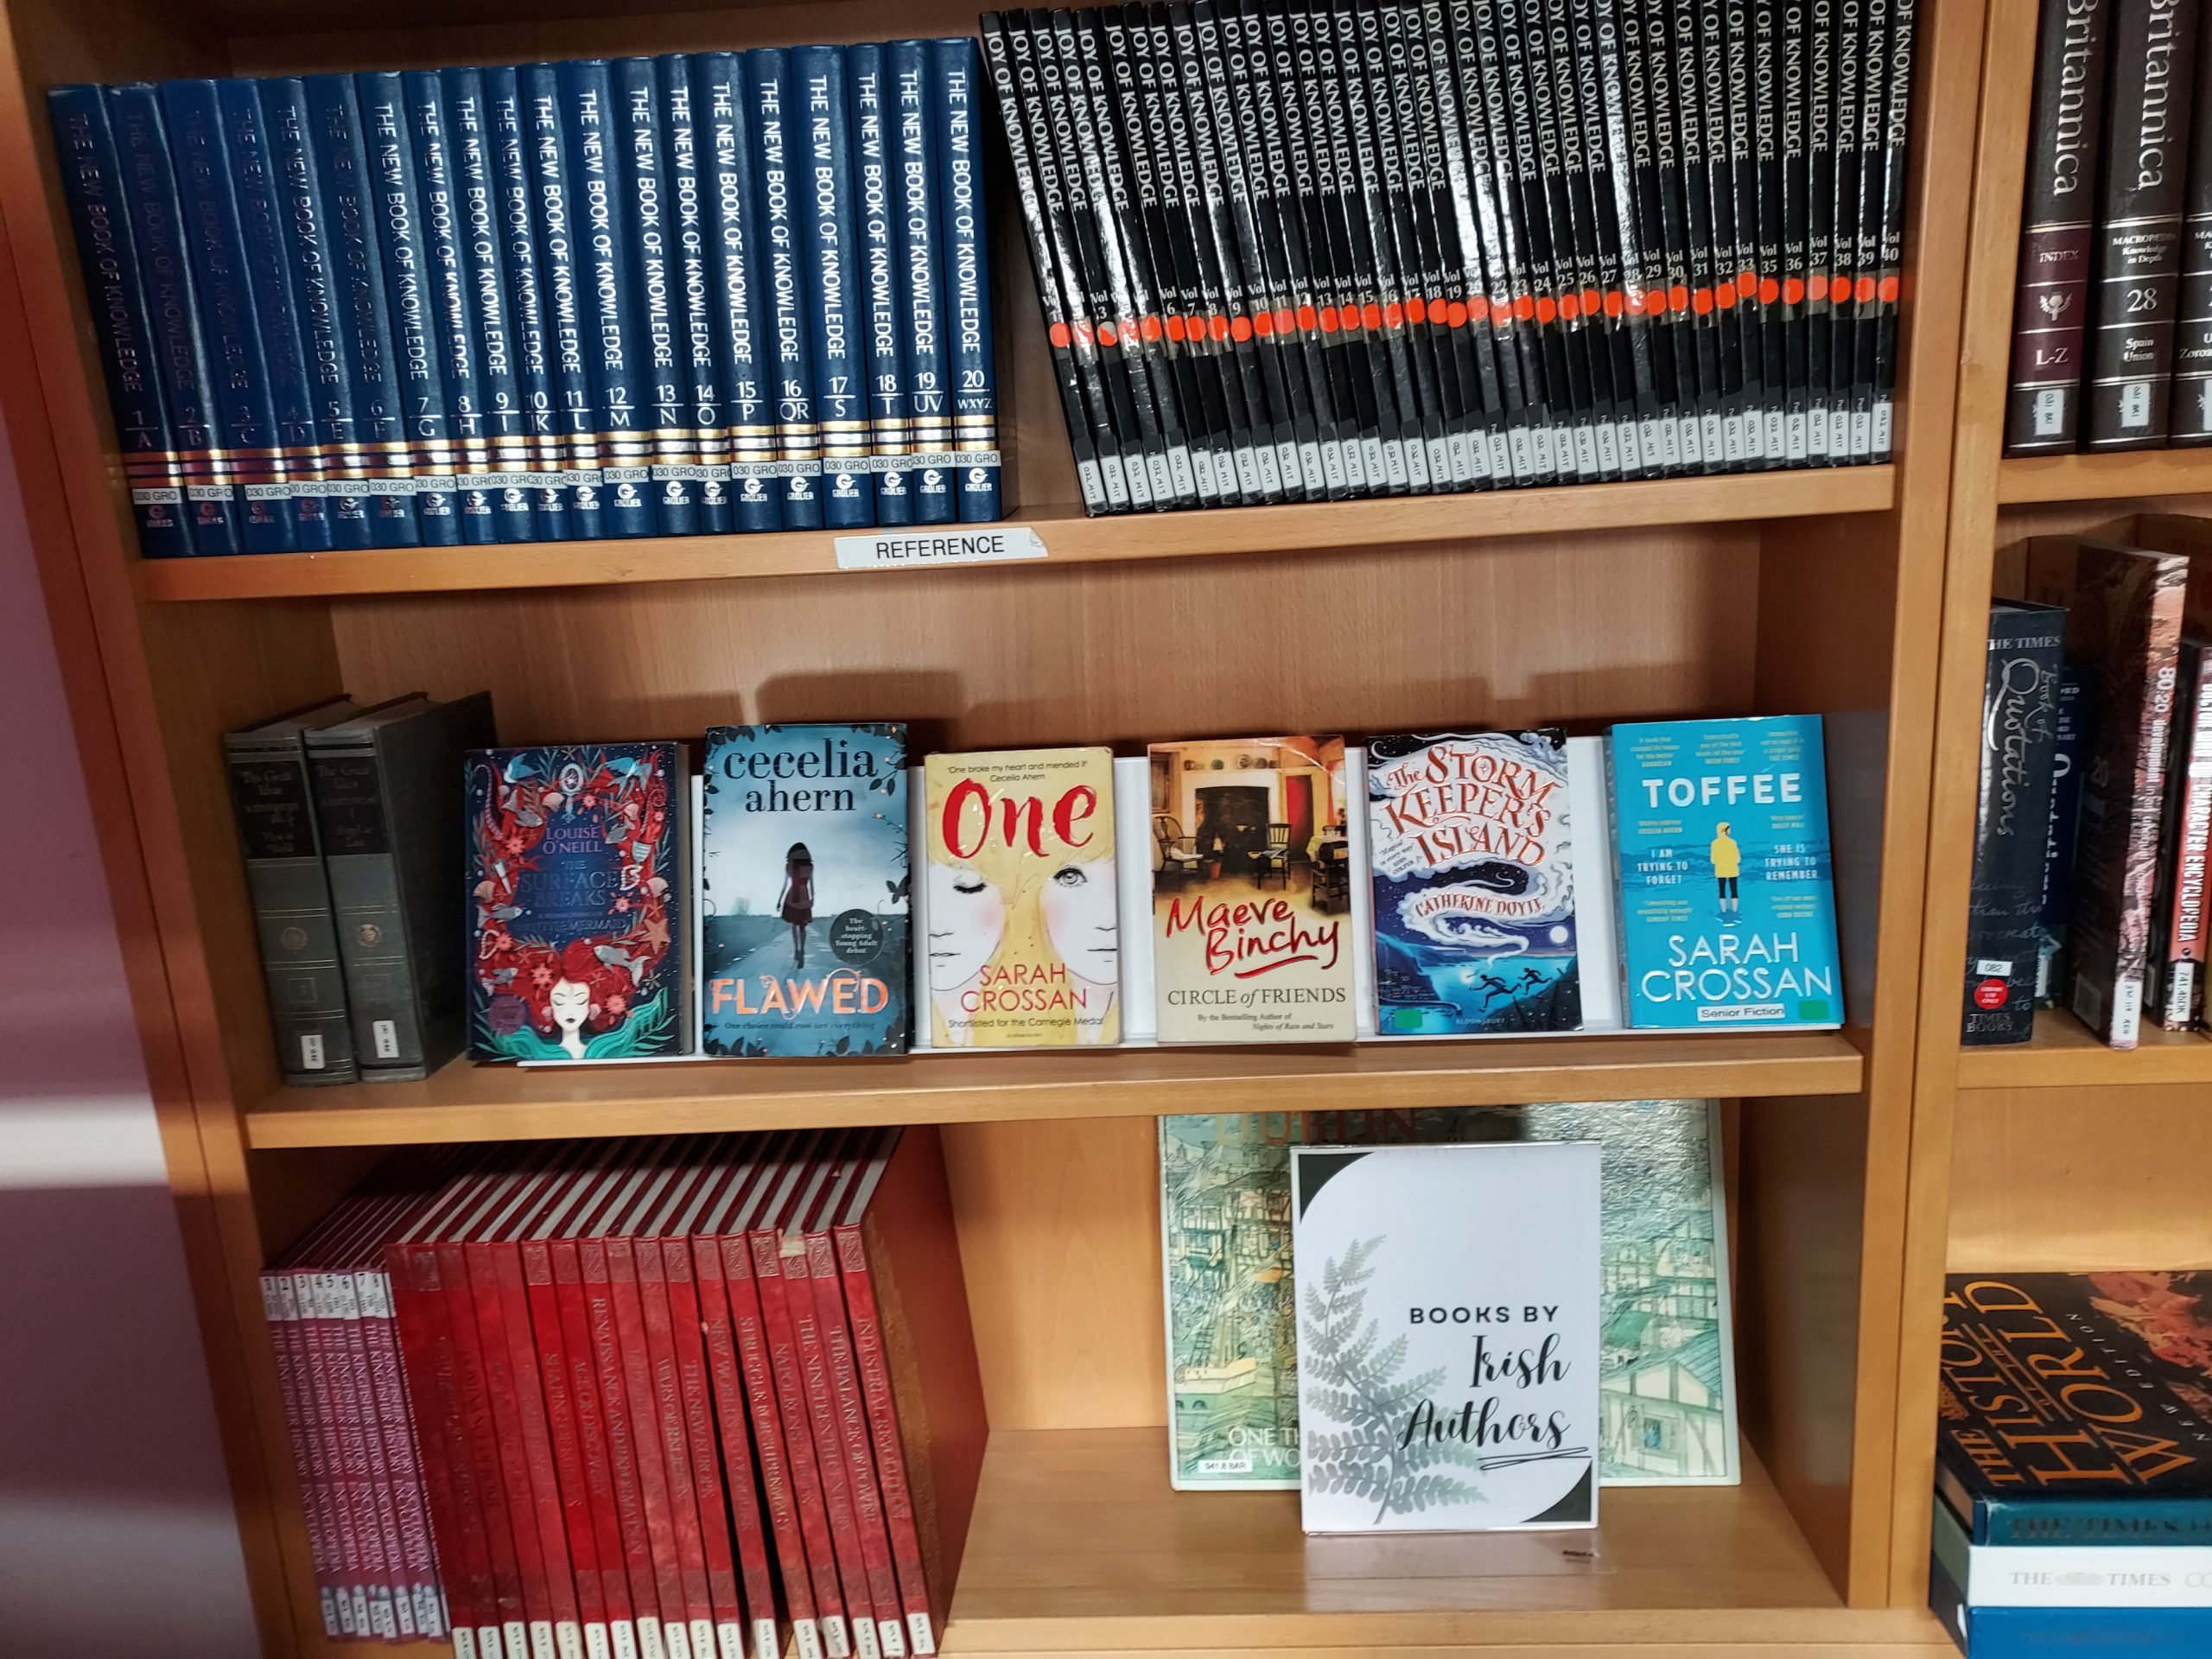 Books by Irish female authors bookshelf display.